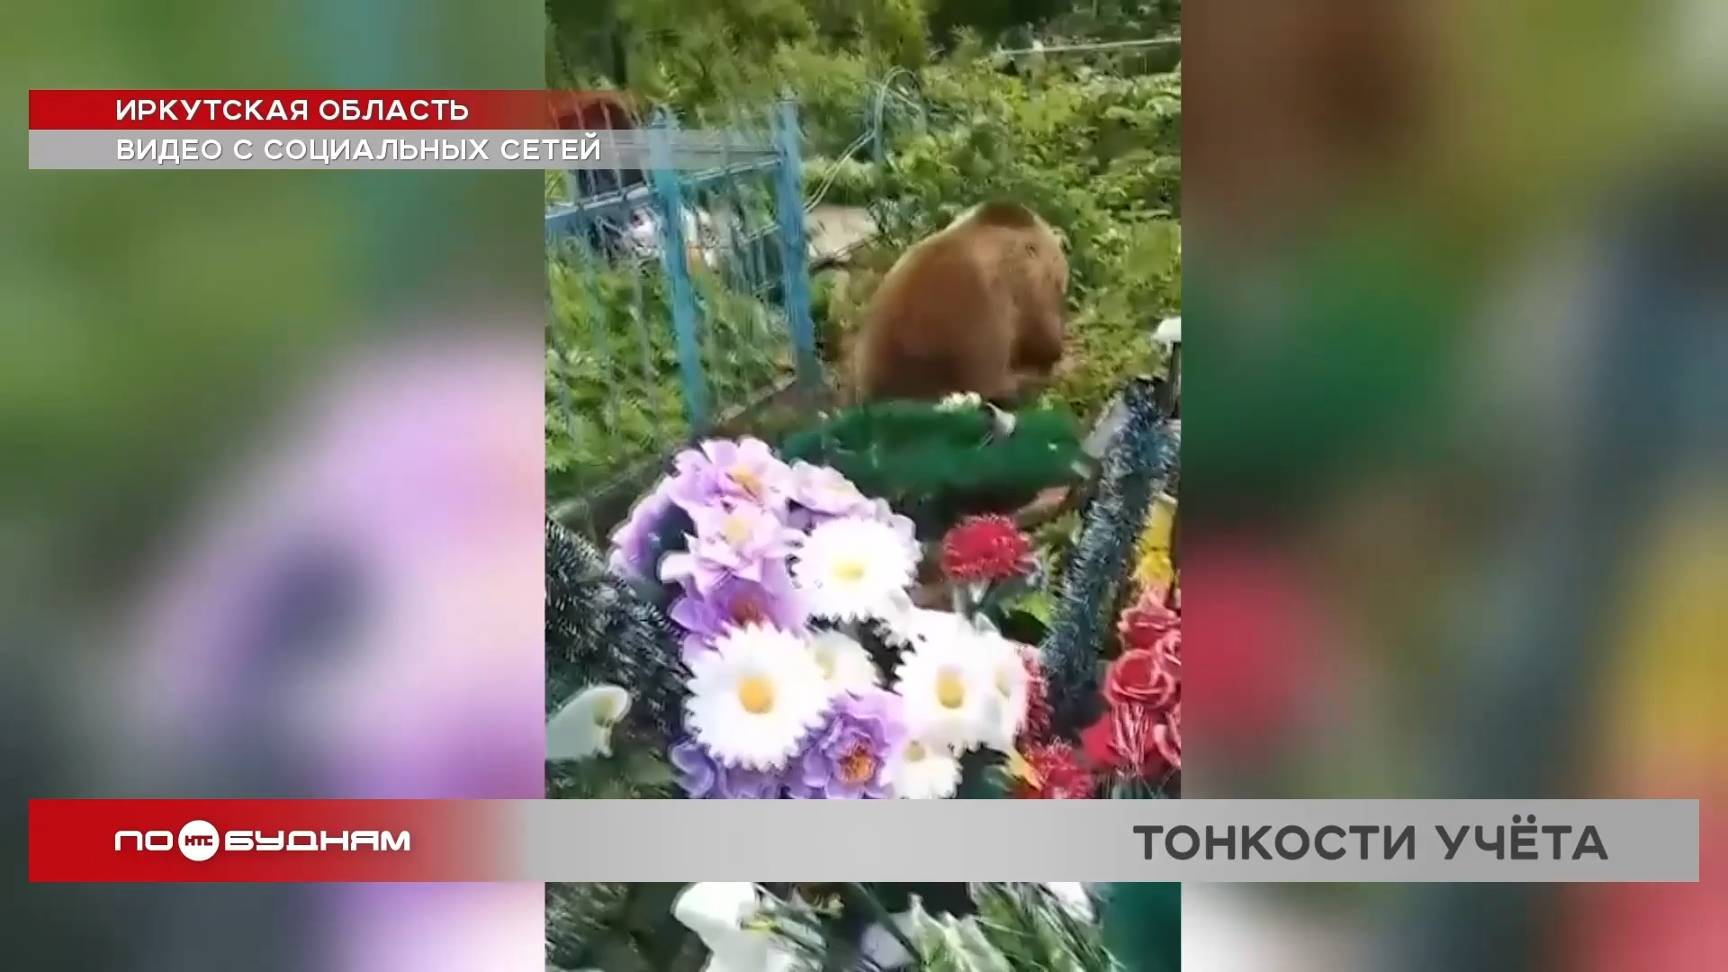 Медвежий бум, или Хищники активно осваивают окрестности городов и посёлков Иркутской области